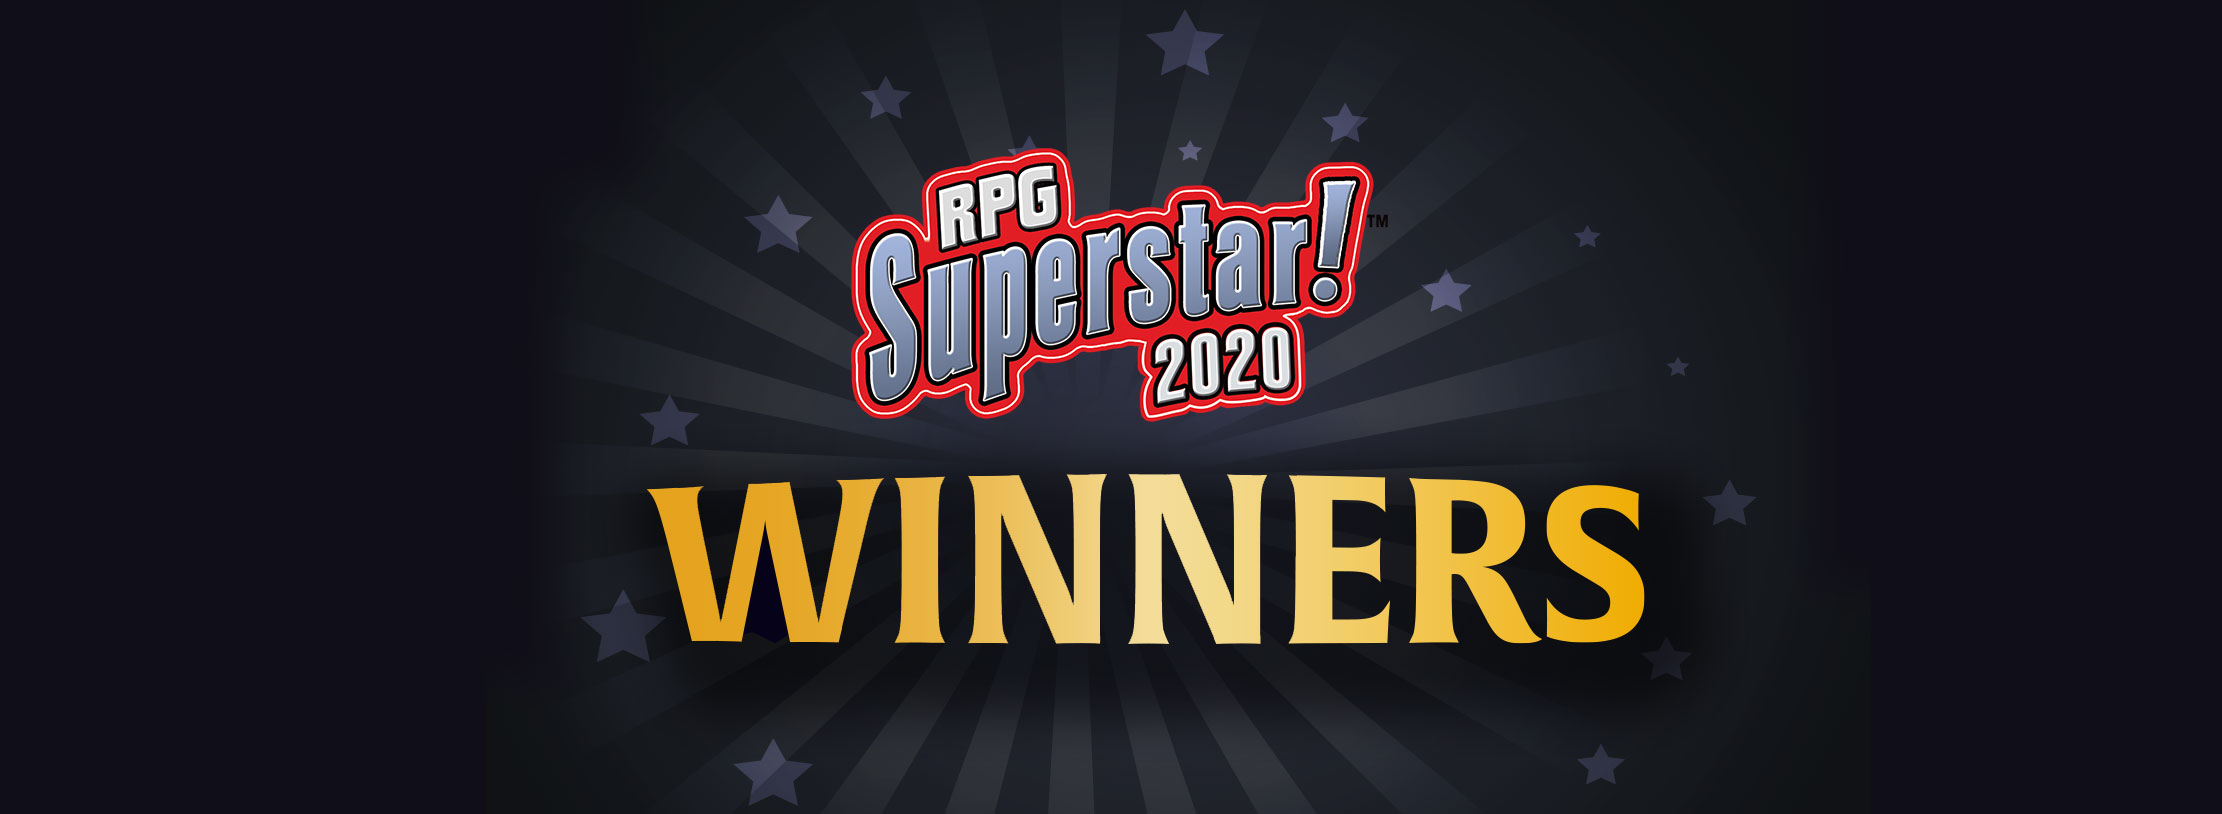 RPG Superstar 2023 Winners